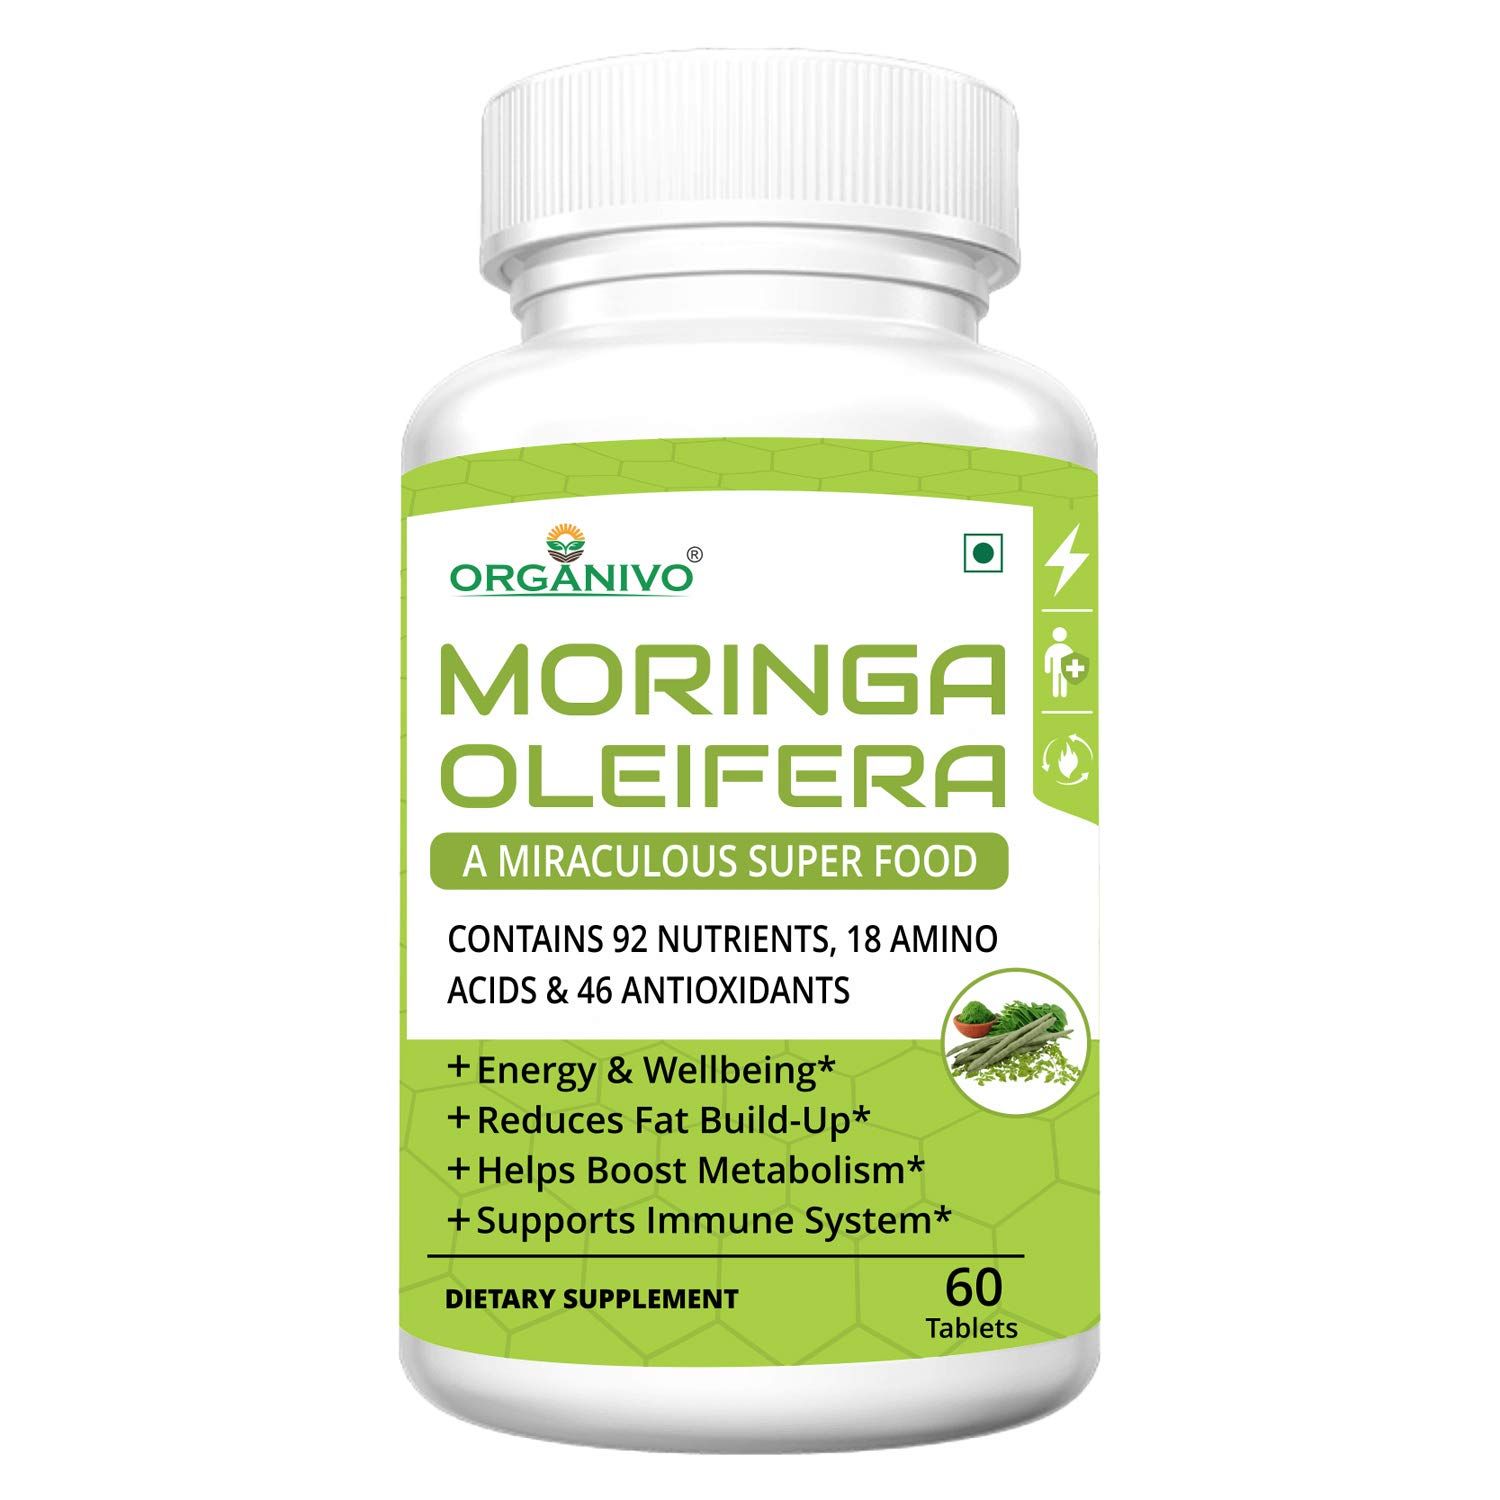 Organivo Moringa Oleifera Plant Based Superfood Supplement Image